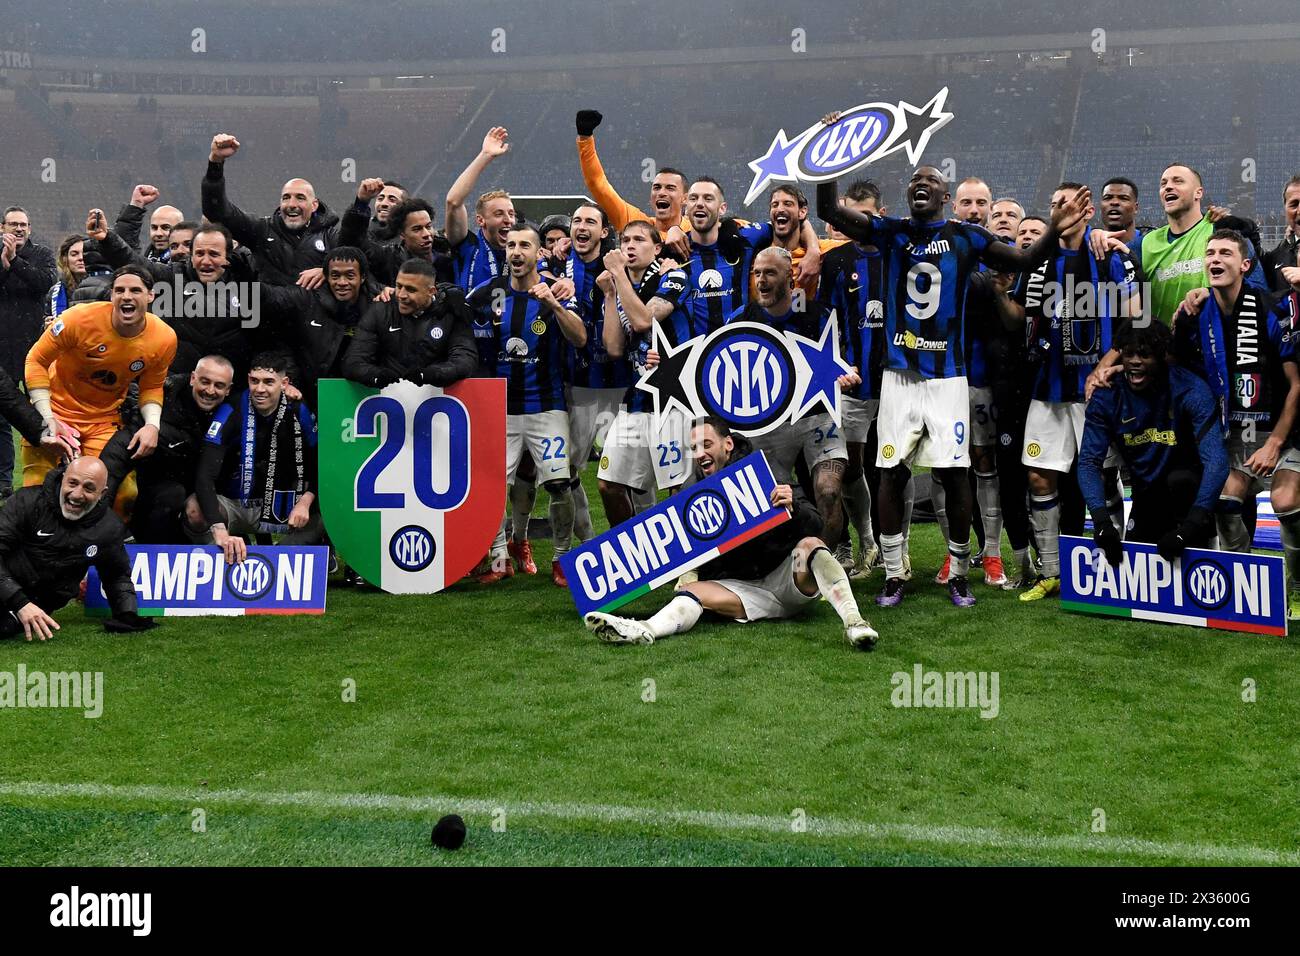 Les joueurs et le personnel du FC Internazionale célèbrent la victoire du championnat italien à la fin du match de Serie A entre l'AC Milan et le FC Internazionale au stade San Siro de Milan (Italie), le 22 avril 2023. Le FC Internazionale a remporté le 20e 'scudetto' de son histoire. Banque D'Images